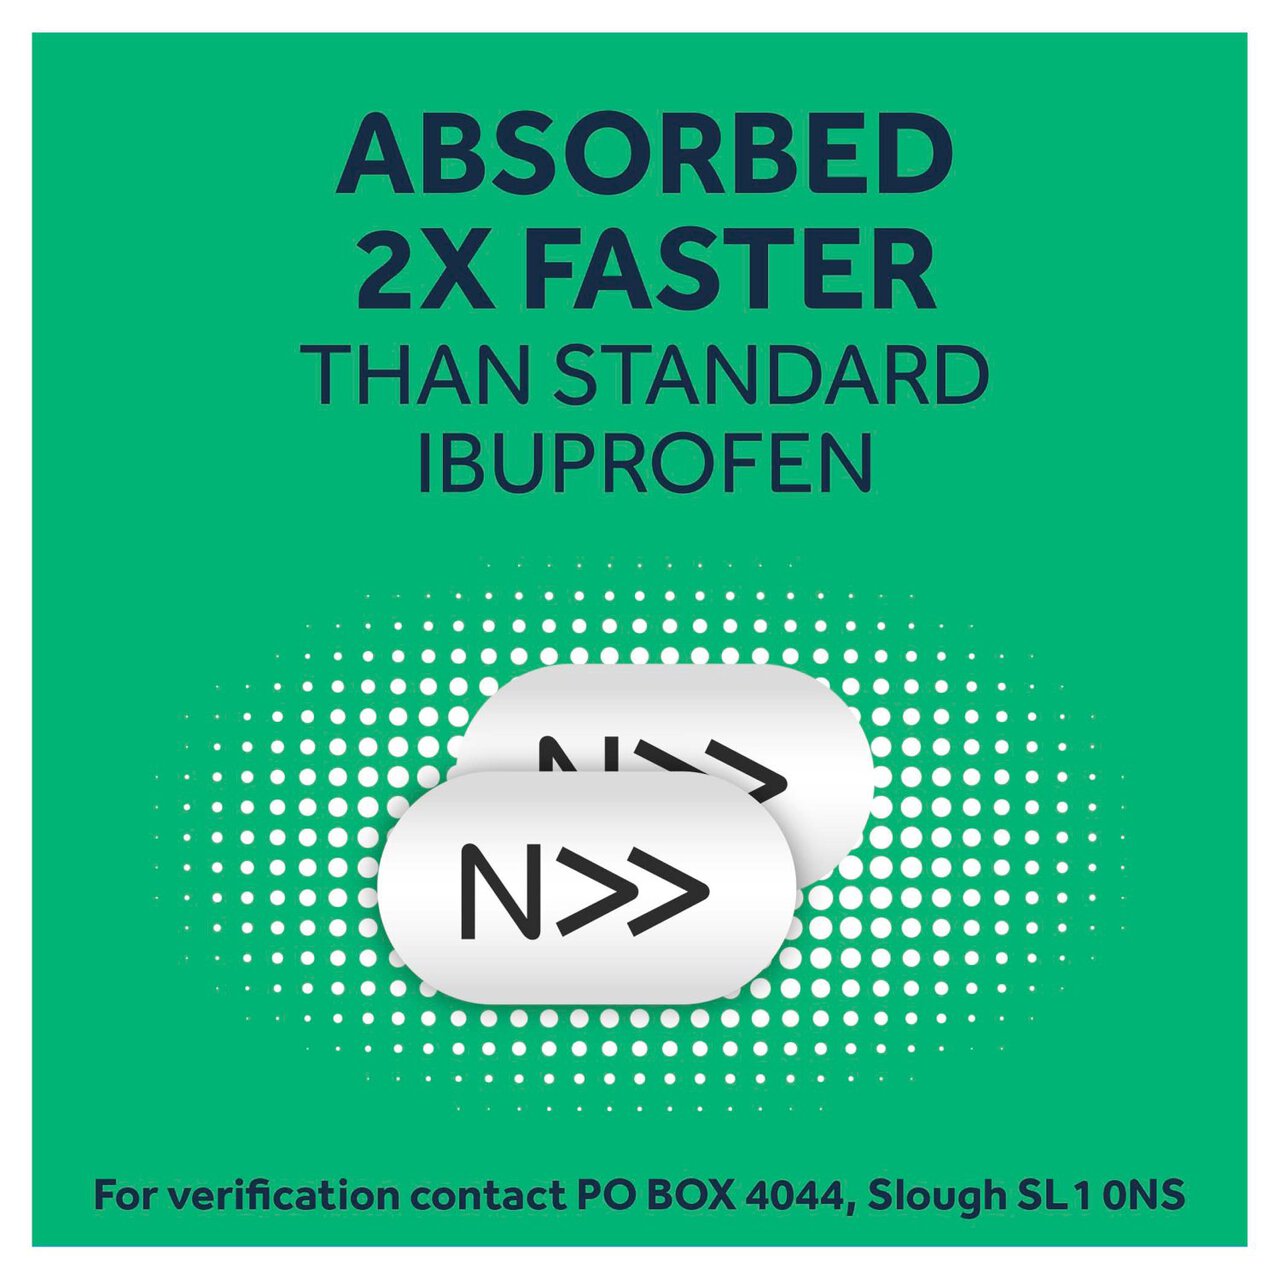 Nurofen Express 256mg Pain Relief Caplets Ibuprofen 16 per pack